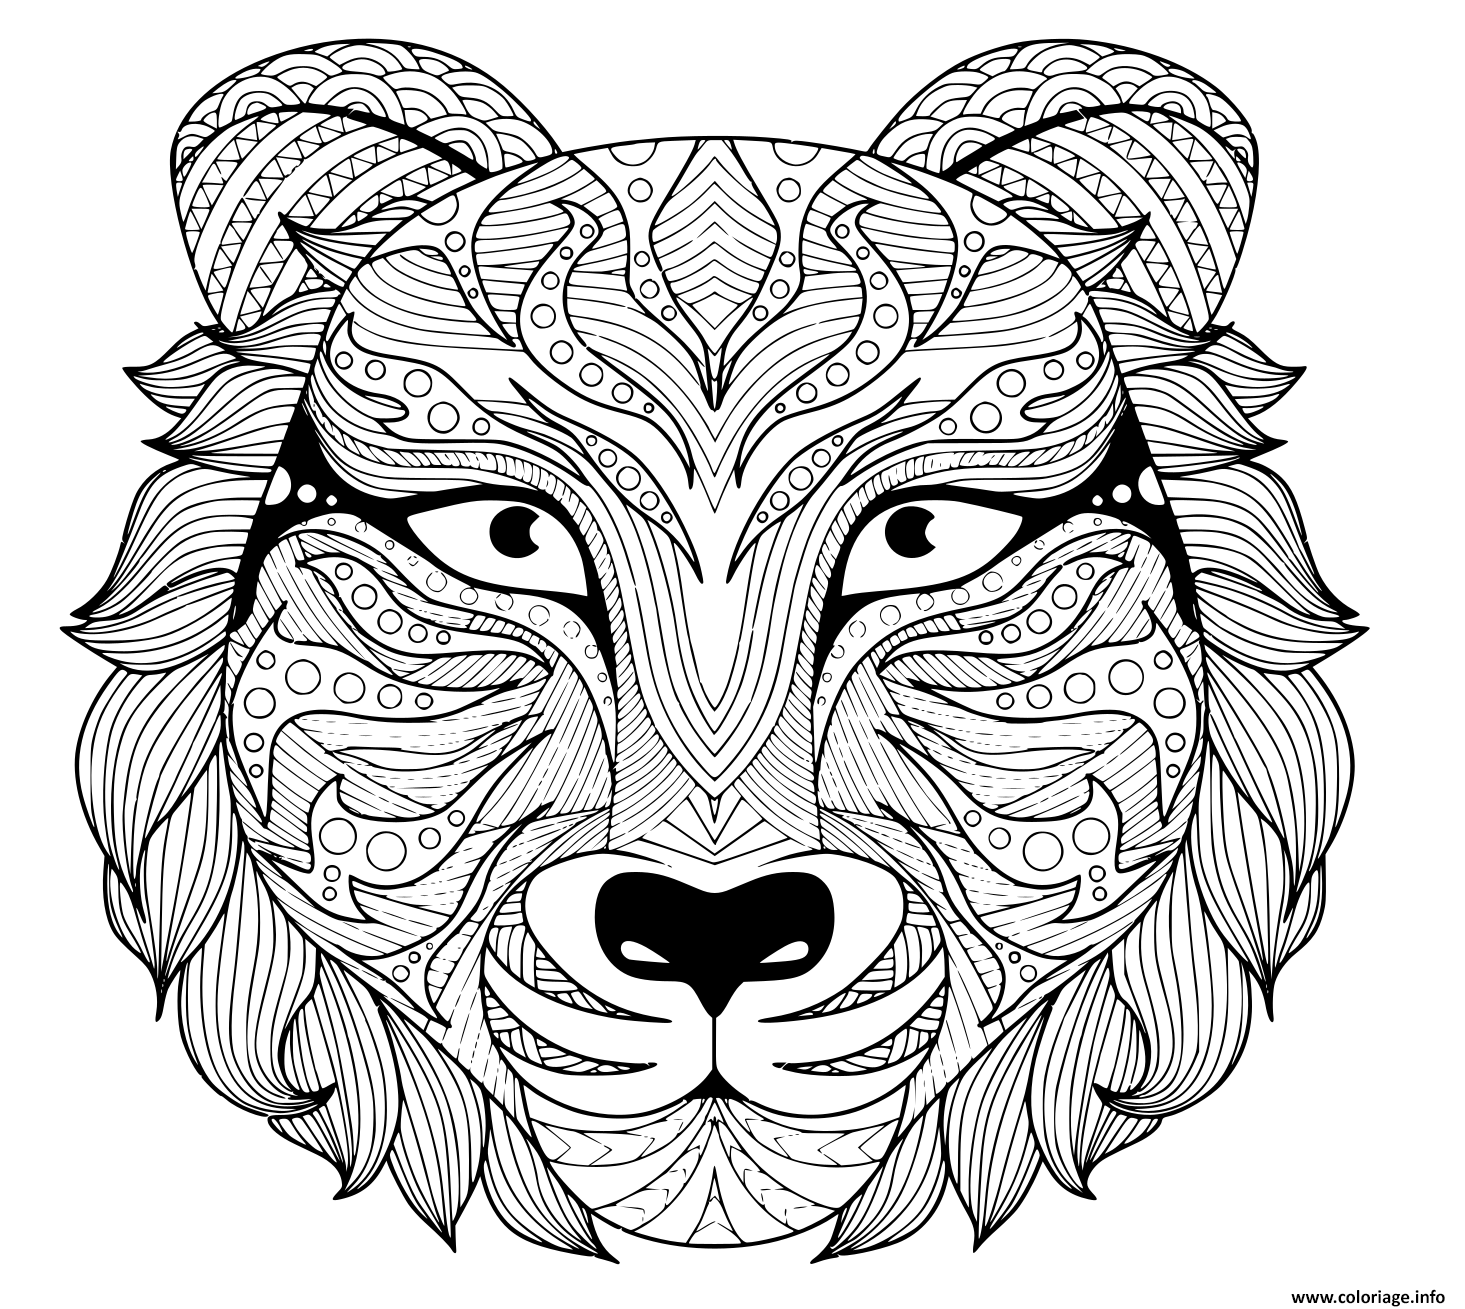 Dessin tattoo tigre zentangle adulte avec yeux colore Coloriage Gratuit à Imprimer